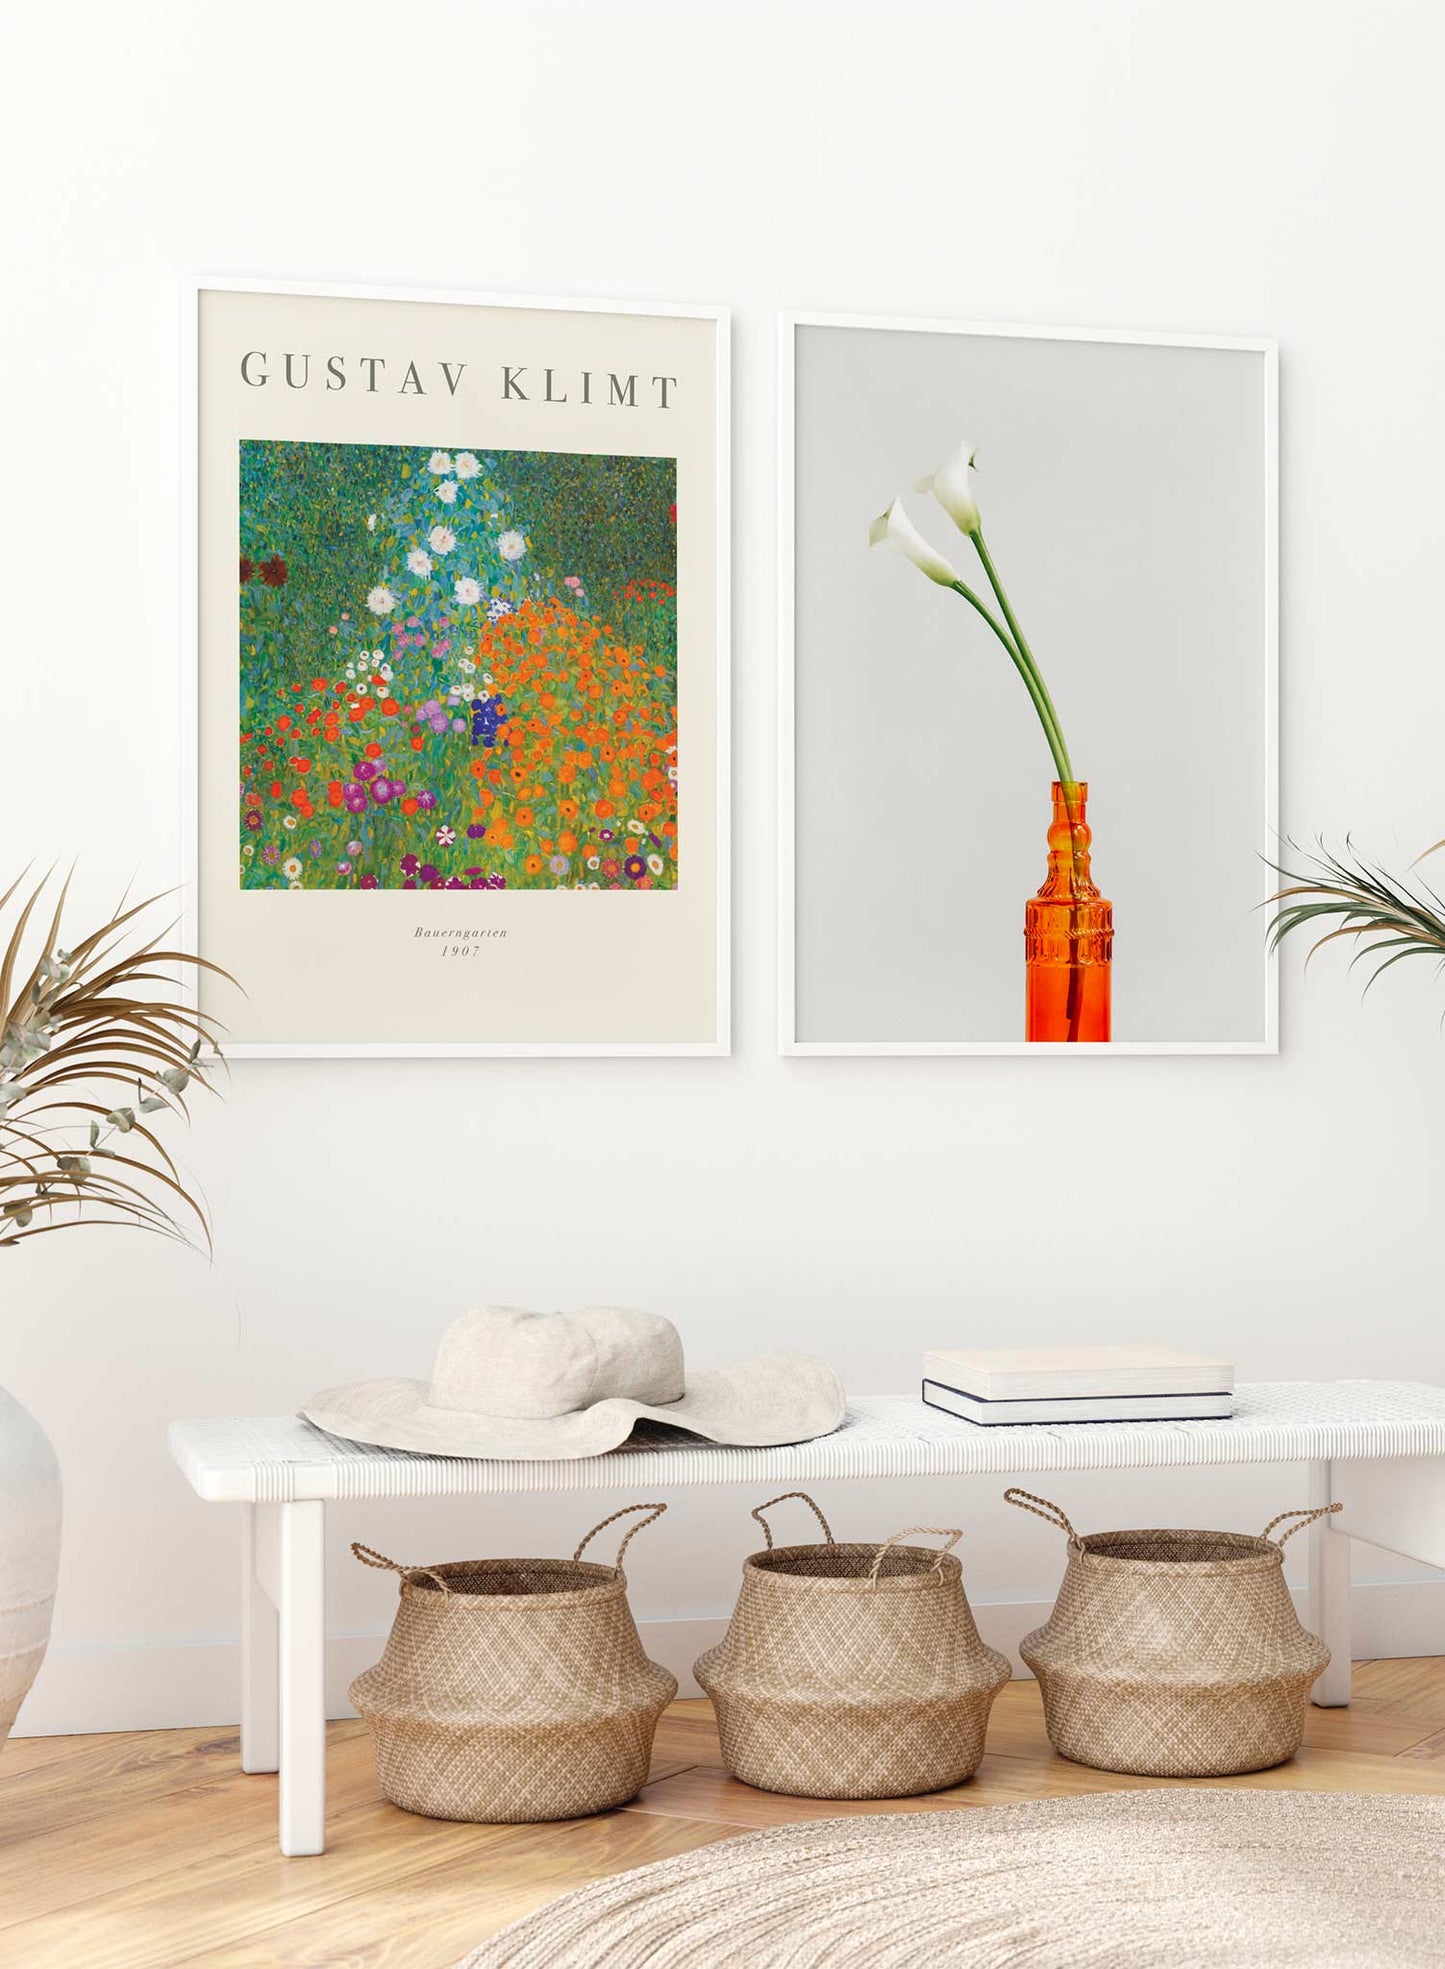 Flower Garden is a minimalist artwork by Opposite Wall of Gustav Klimt's Bauerngarten from 1907.